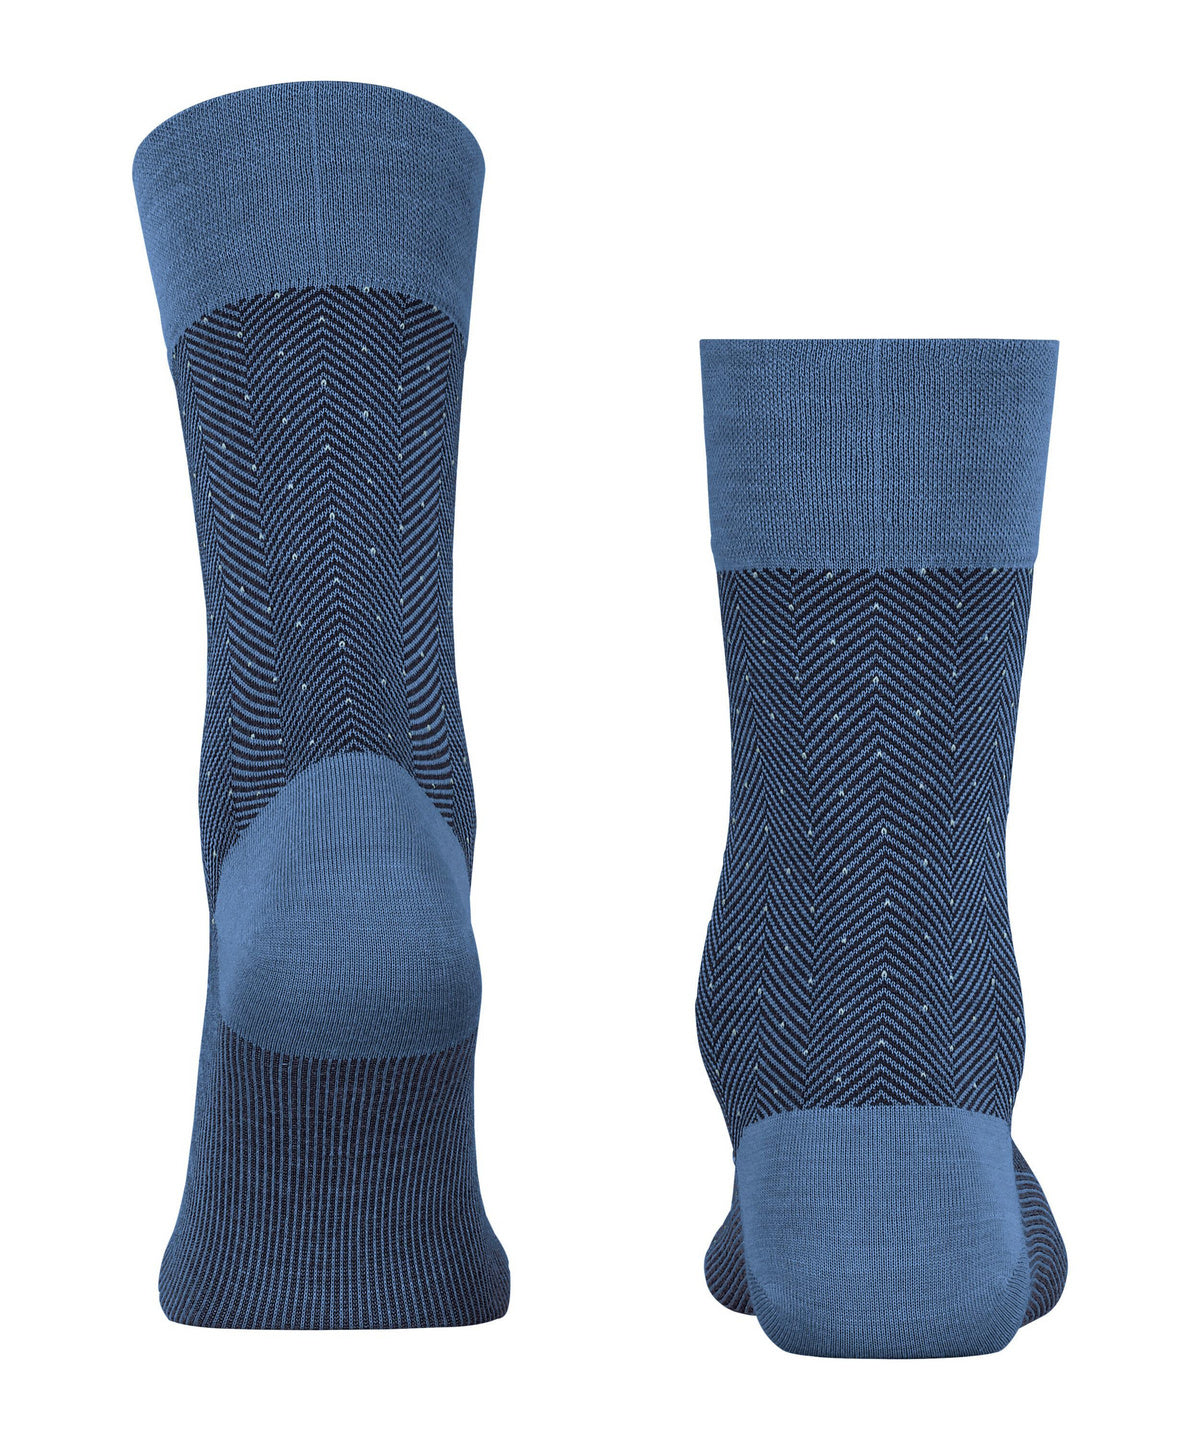 Falke blue herringbone socks